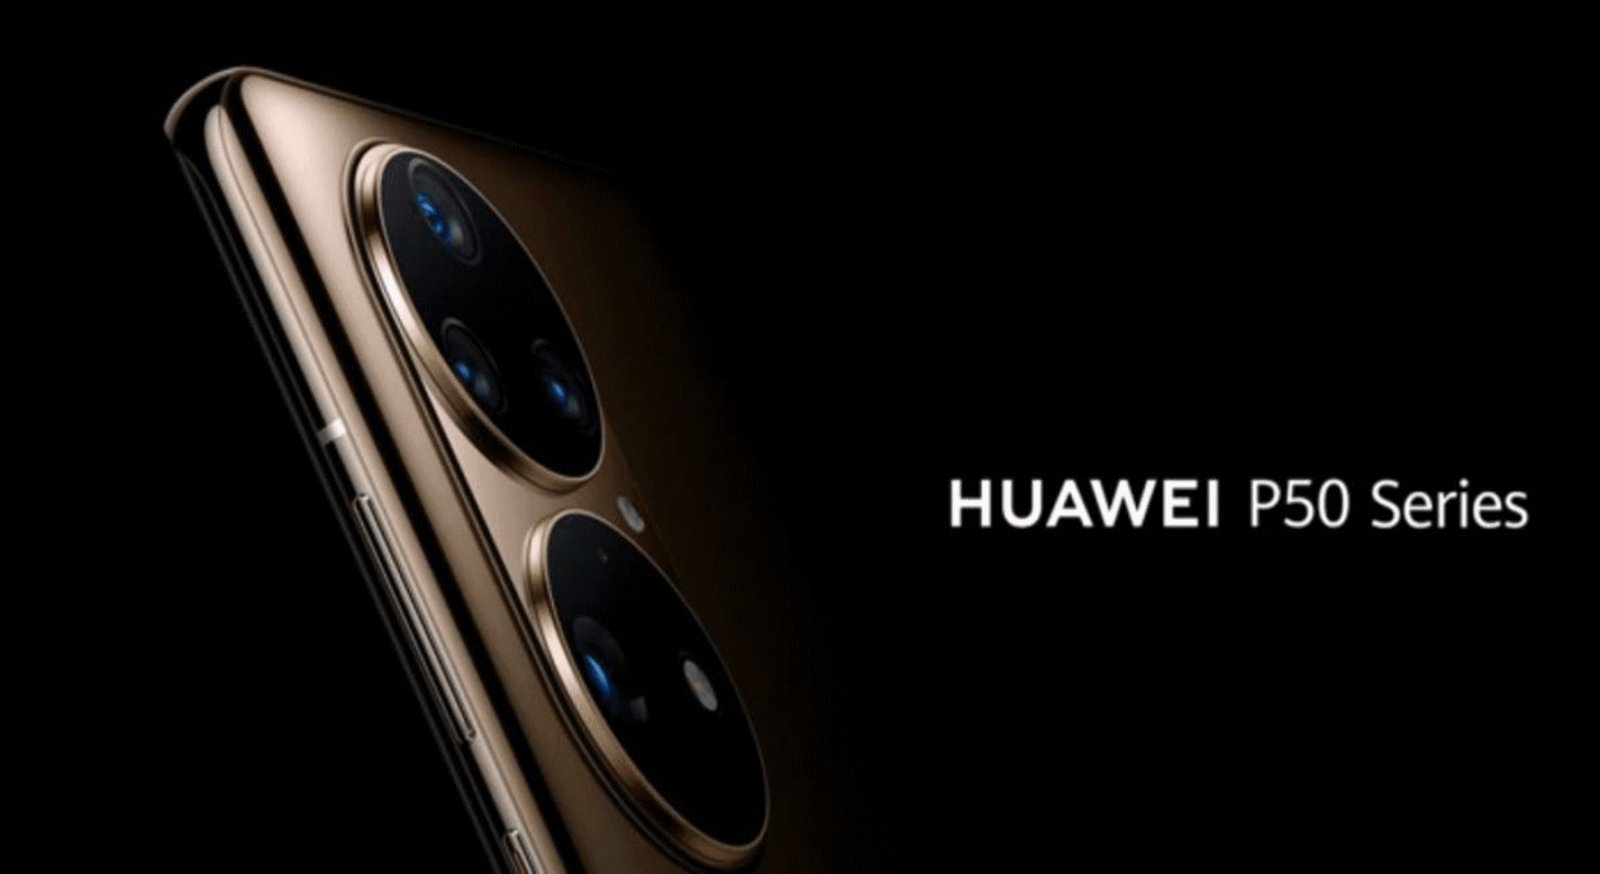 Presentación de los nuevos Huawei P50